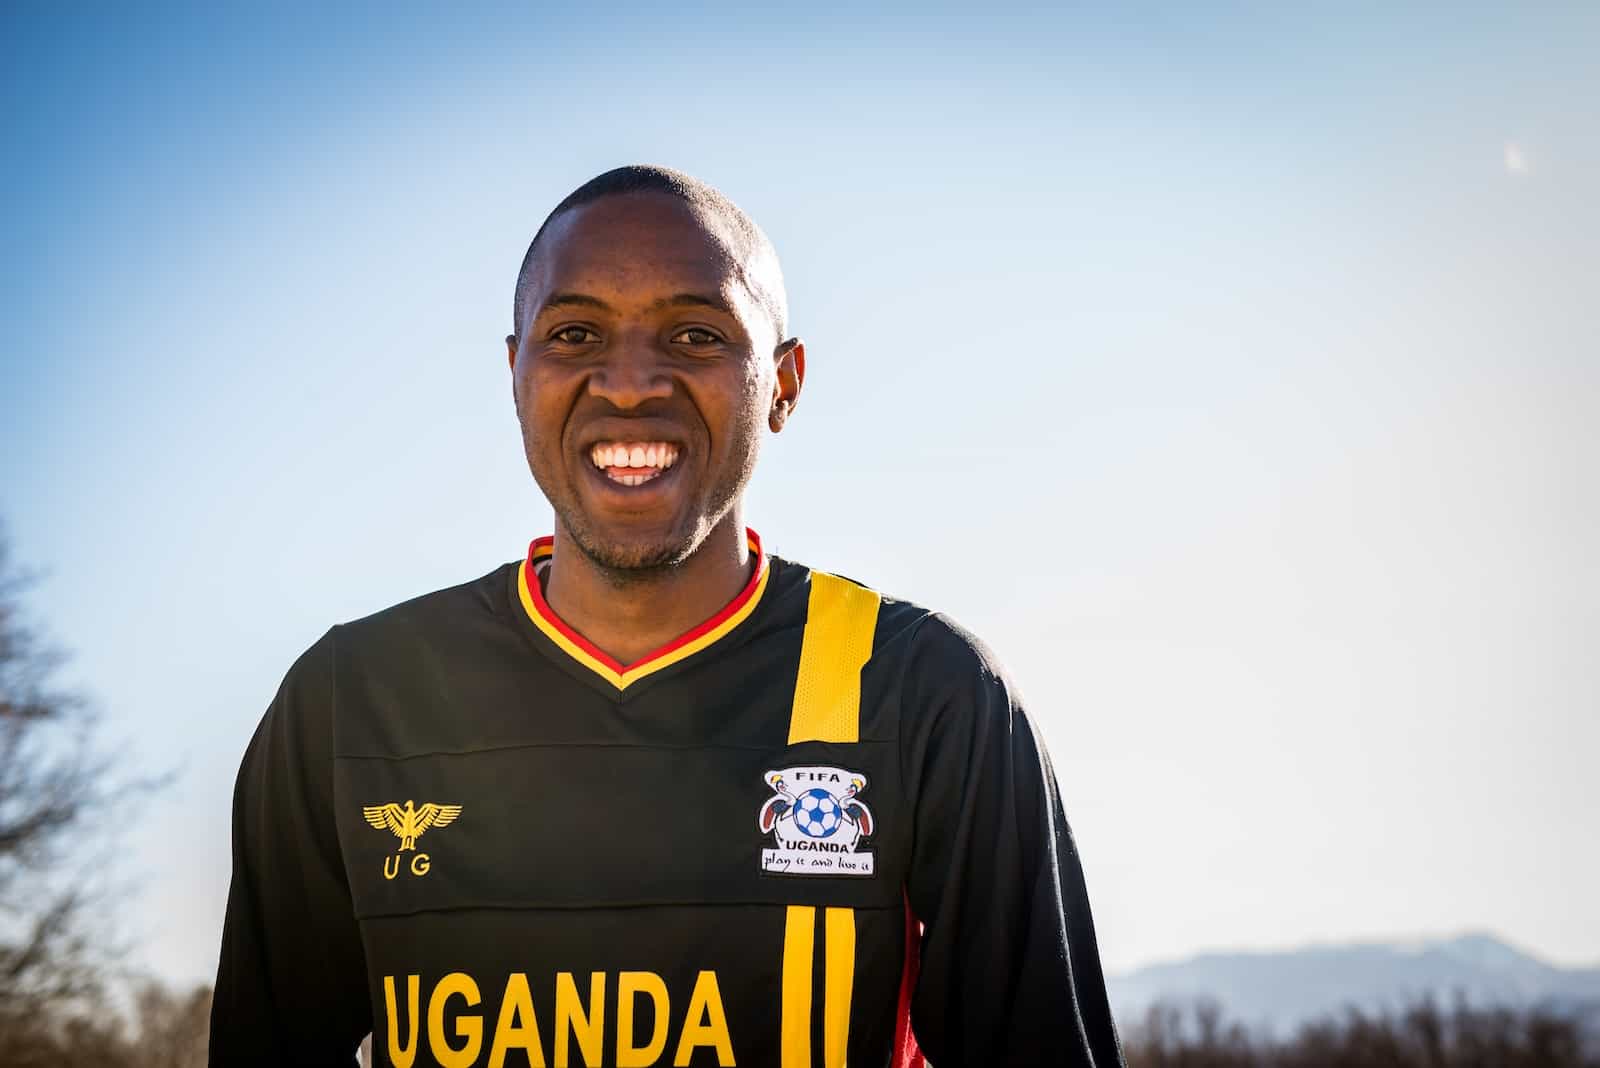 A man smiles, wearing a black shirt that says, "Uganda."